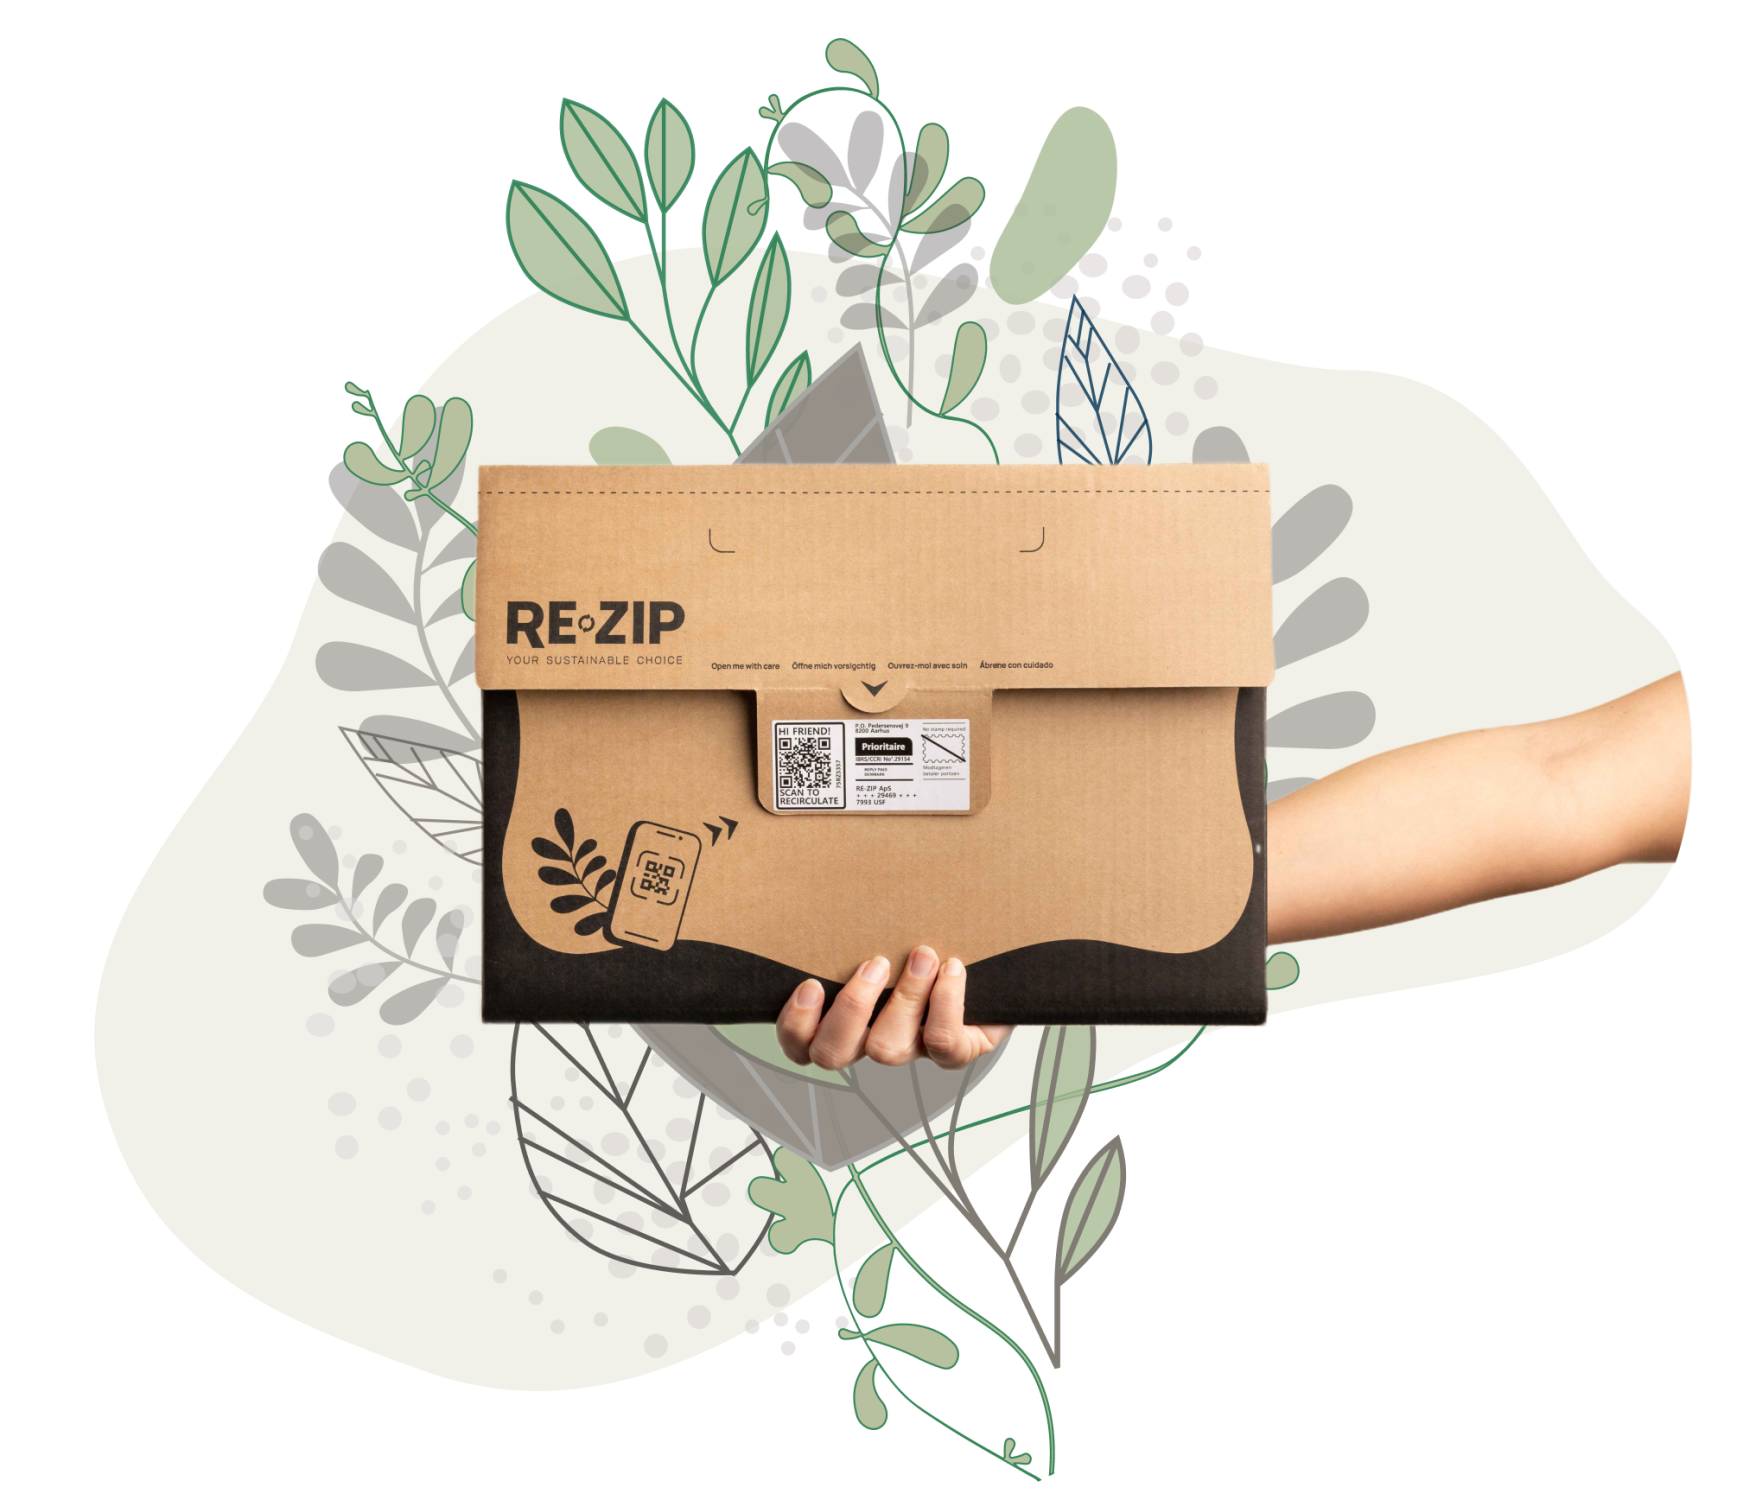 Vælg bæredygtig shopping online med RE-ZIP